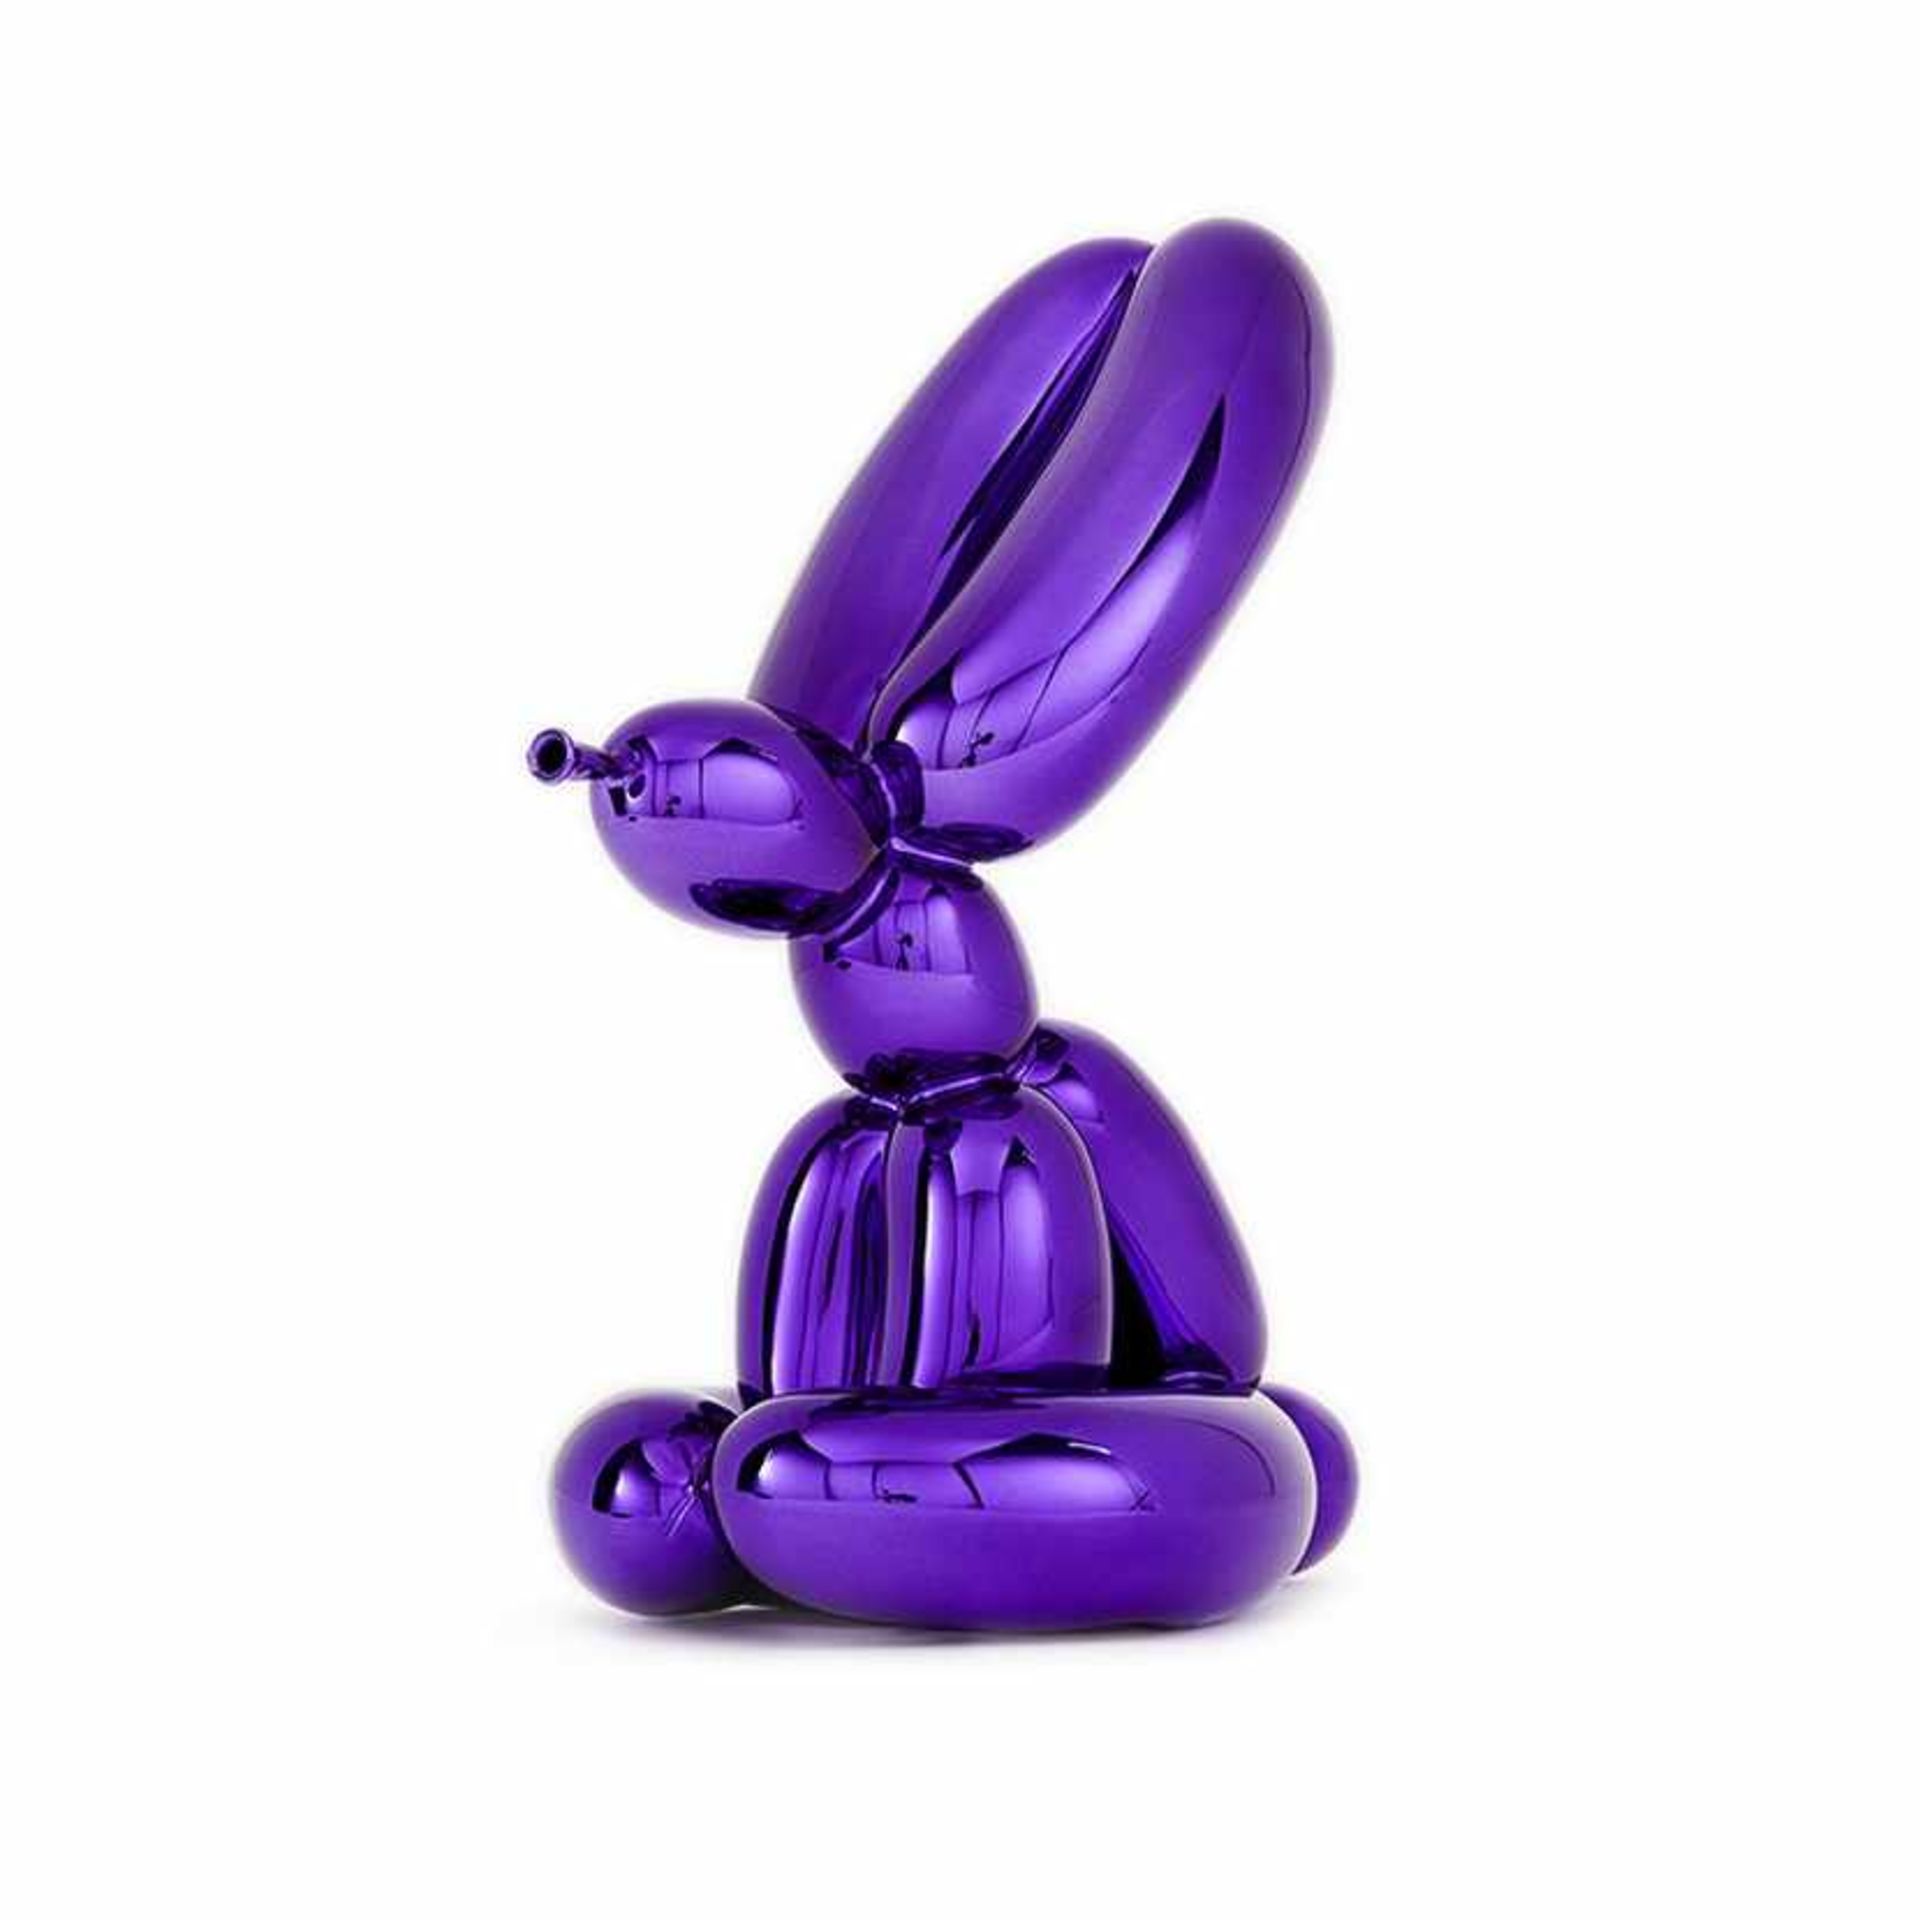 Jeff Koons - Balloon Rabbit (Violet), 2019Sculpture en porcelaine avec revêtement chromatiqueEdition